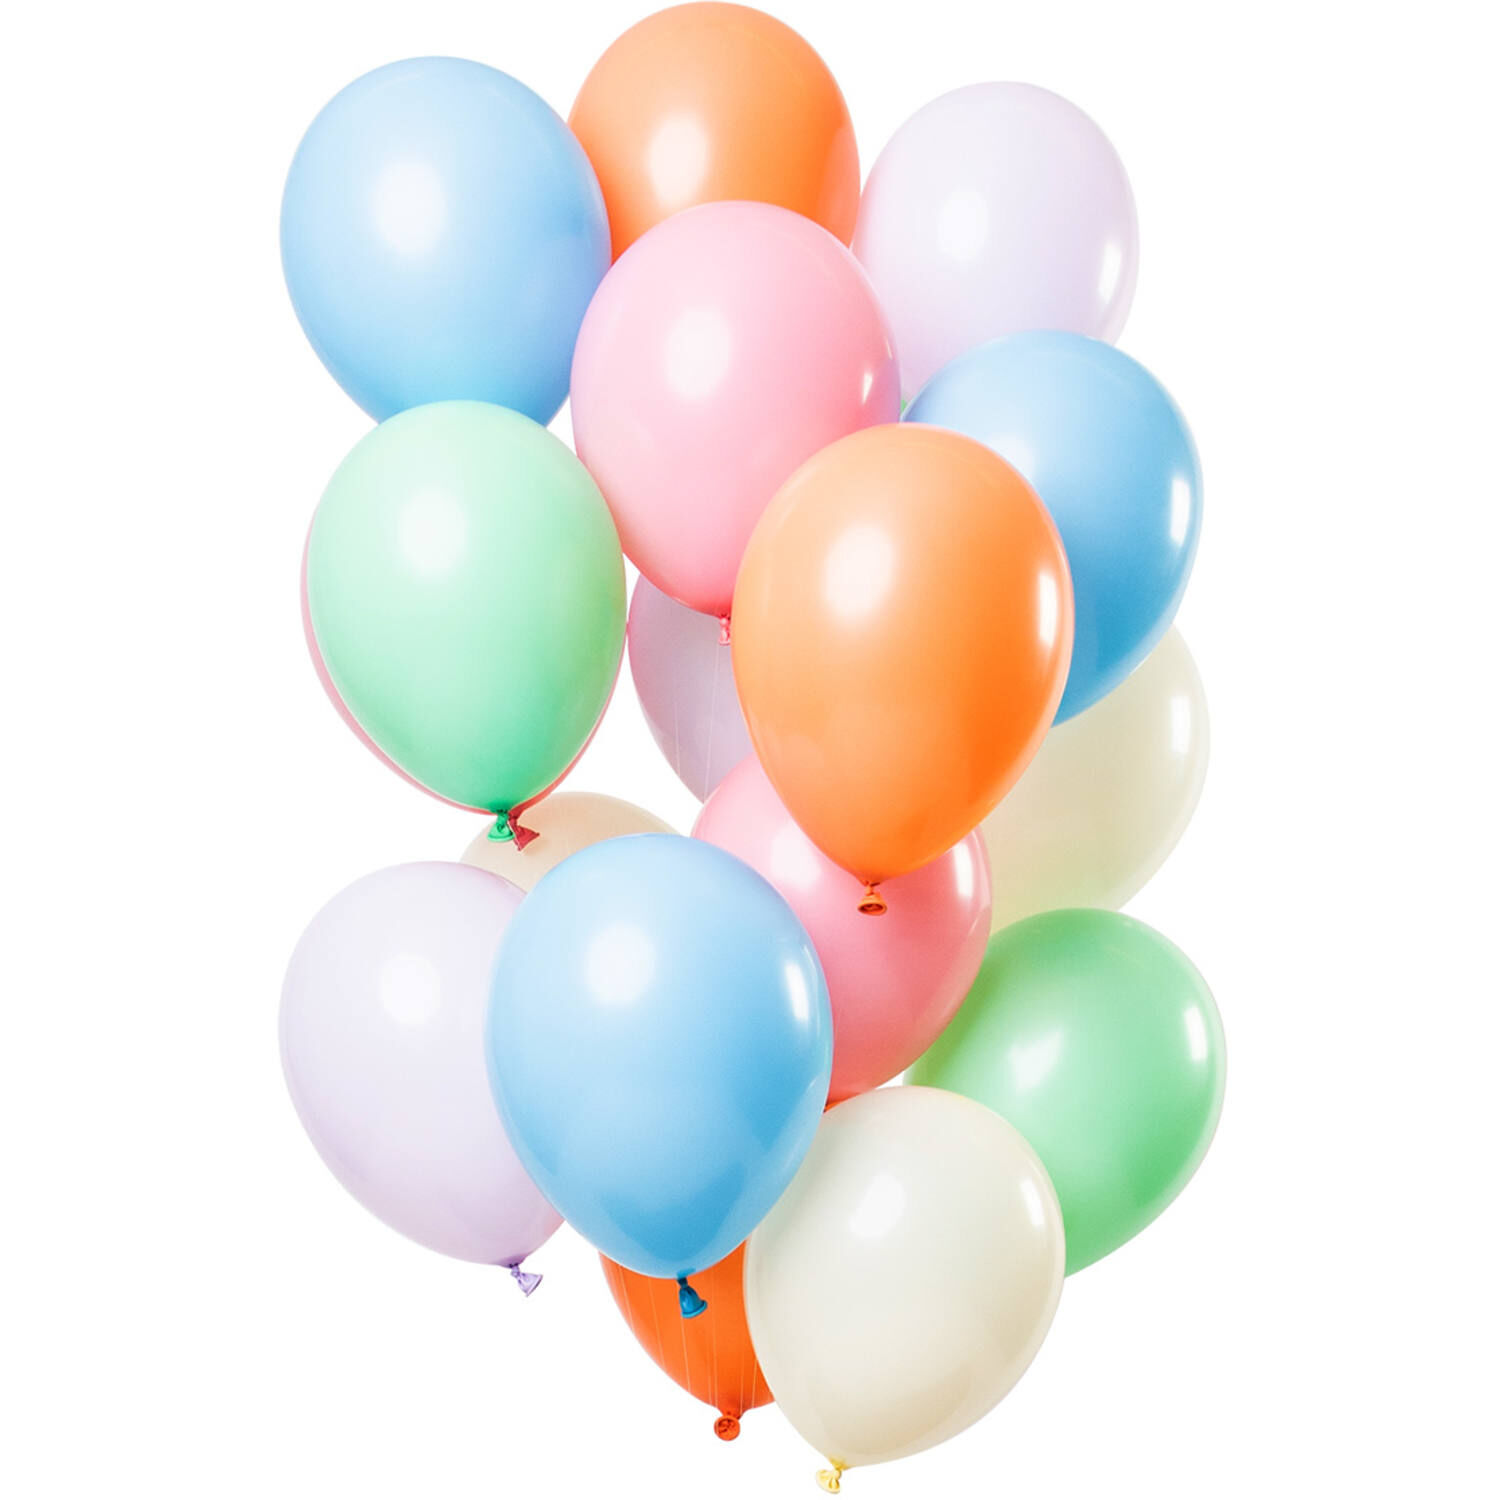 NEU Premium-Latex-Luftballons Multicolor Pastel, 33cm, 12 Stk.